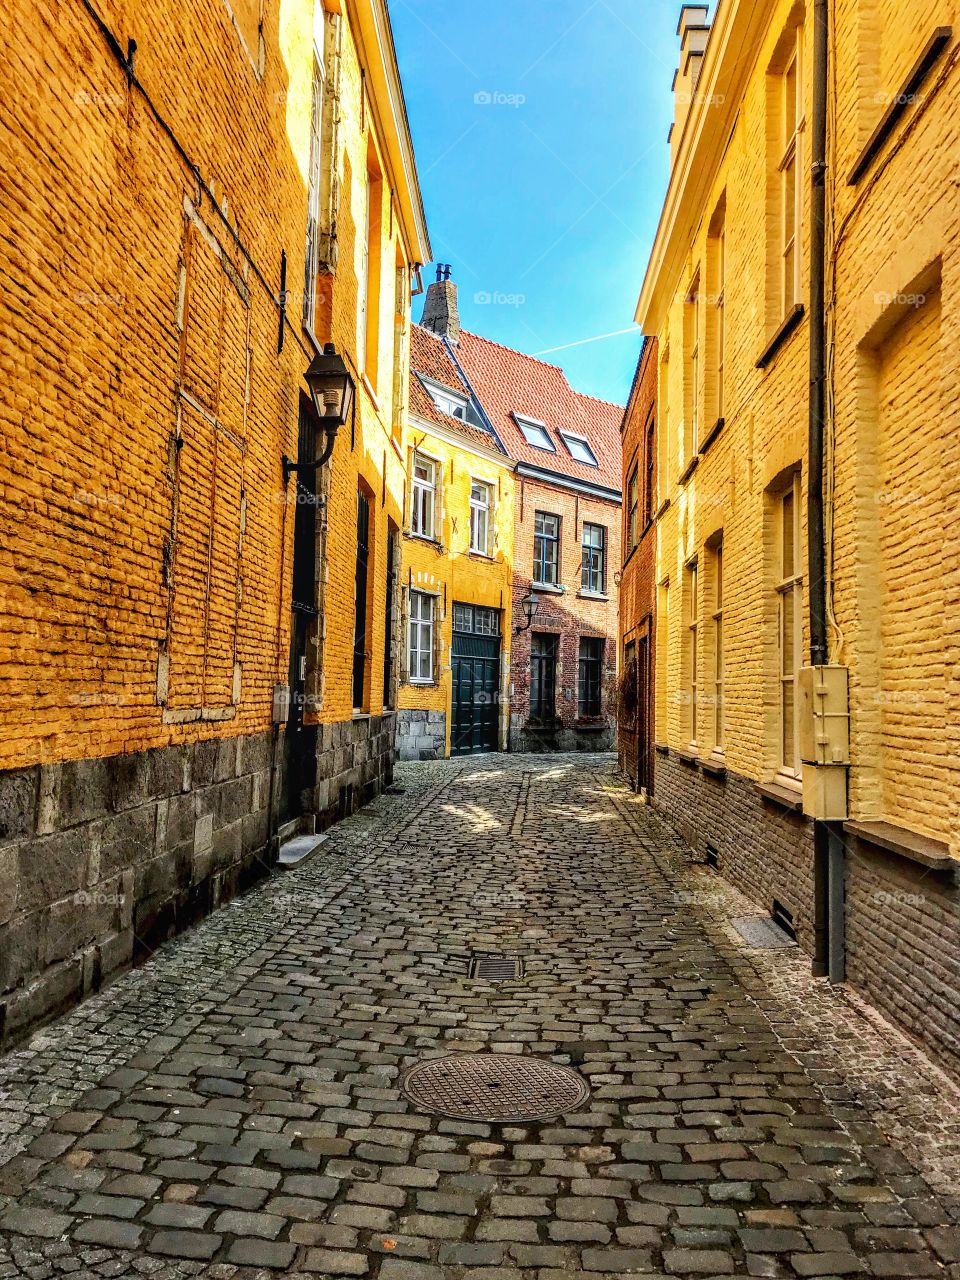 Alleyway in historic Ghent, Belgium